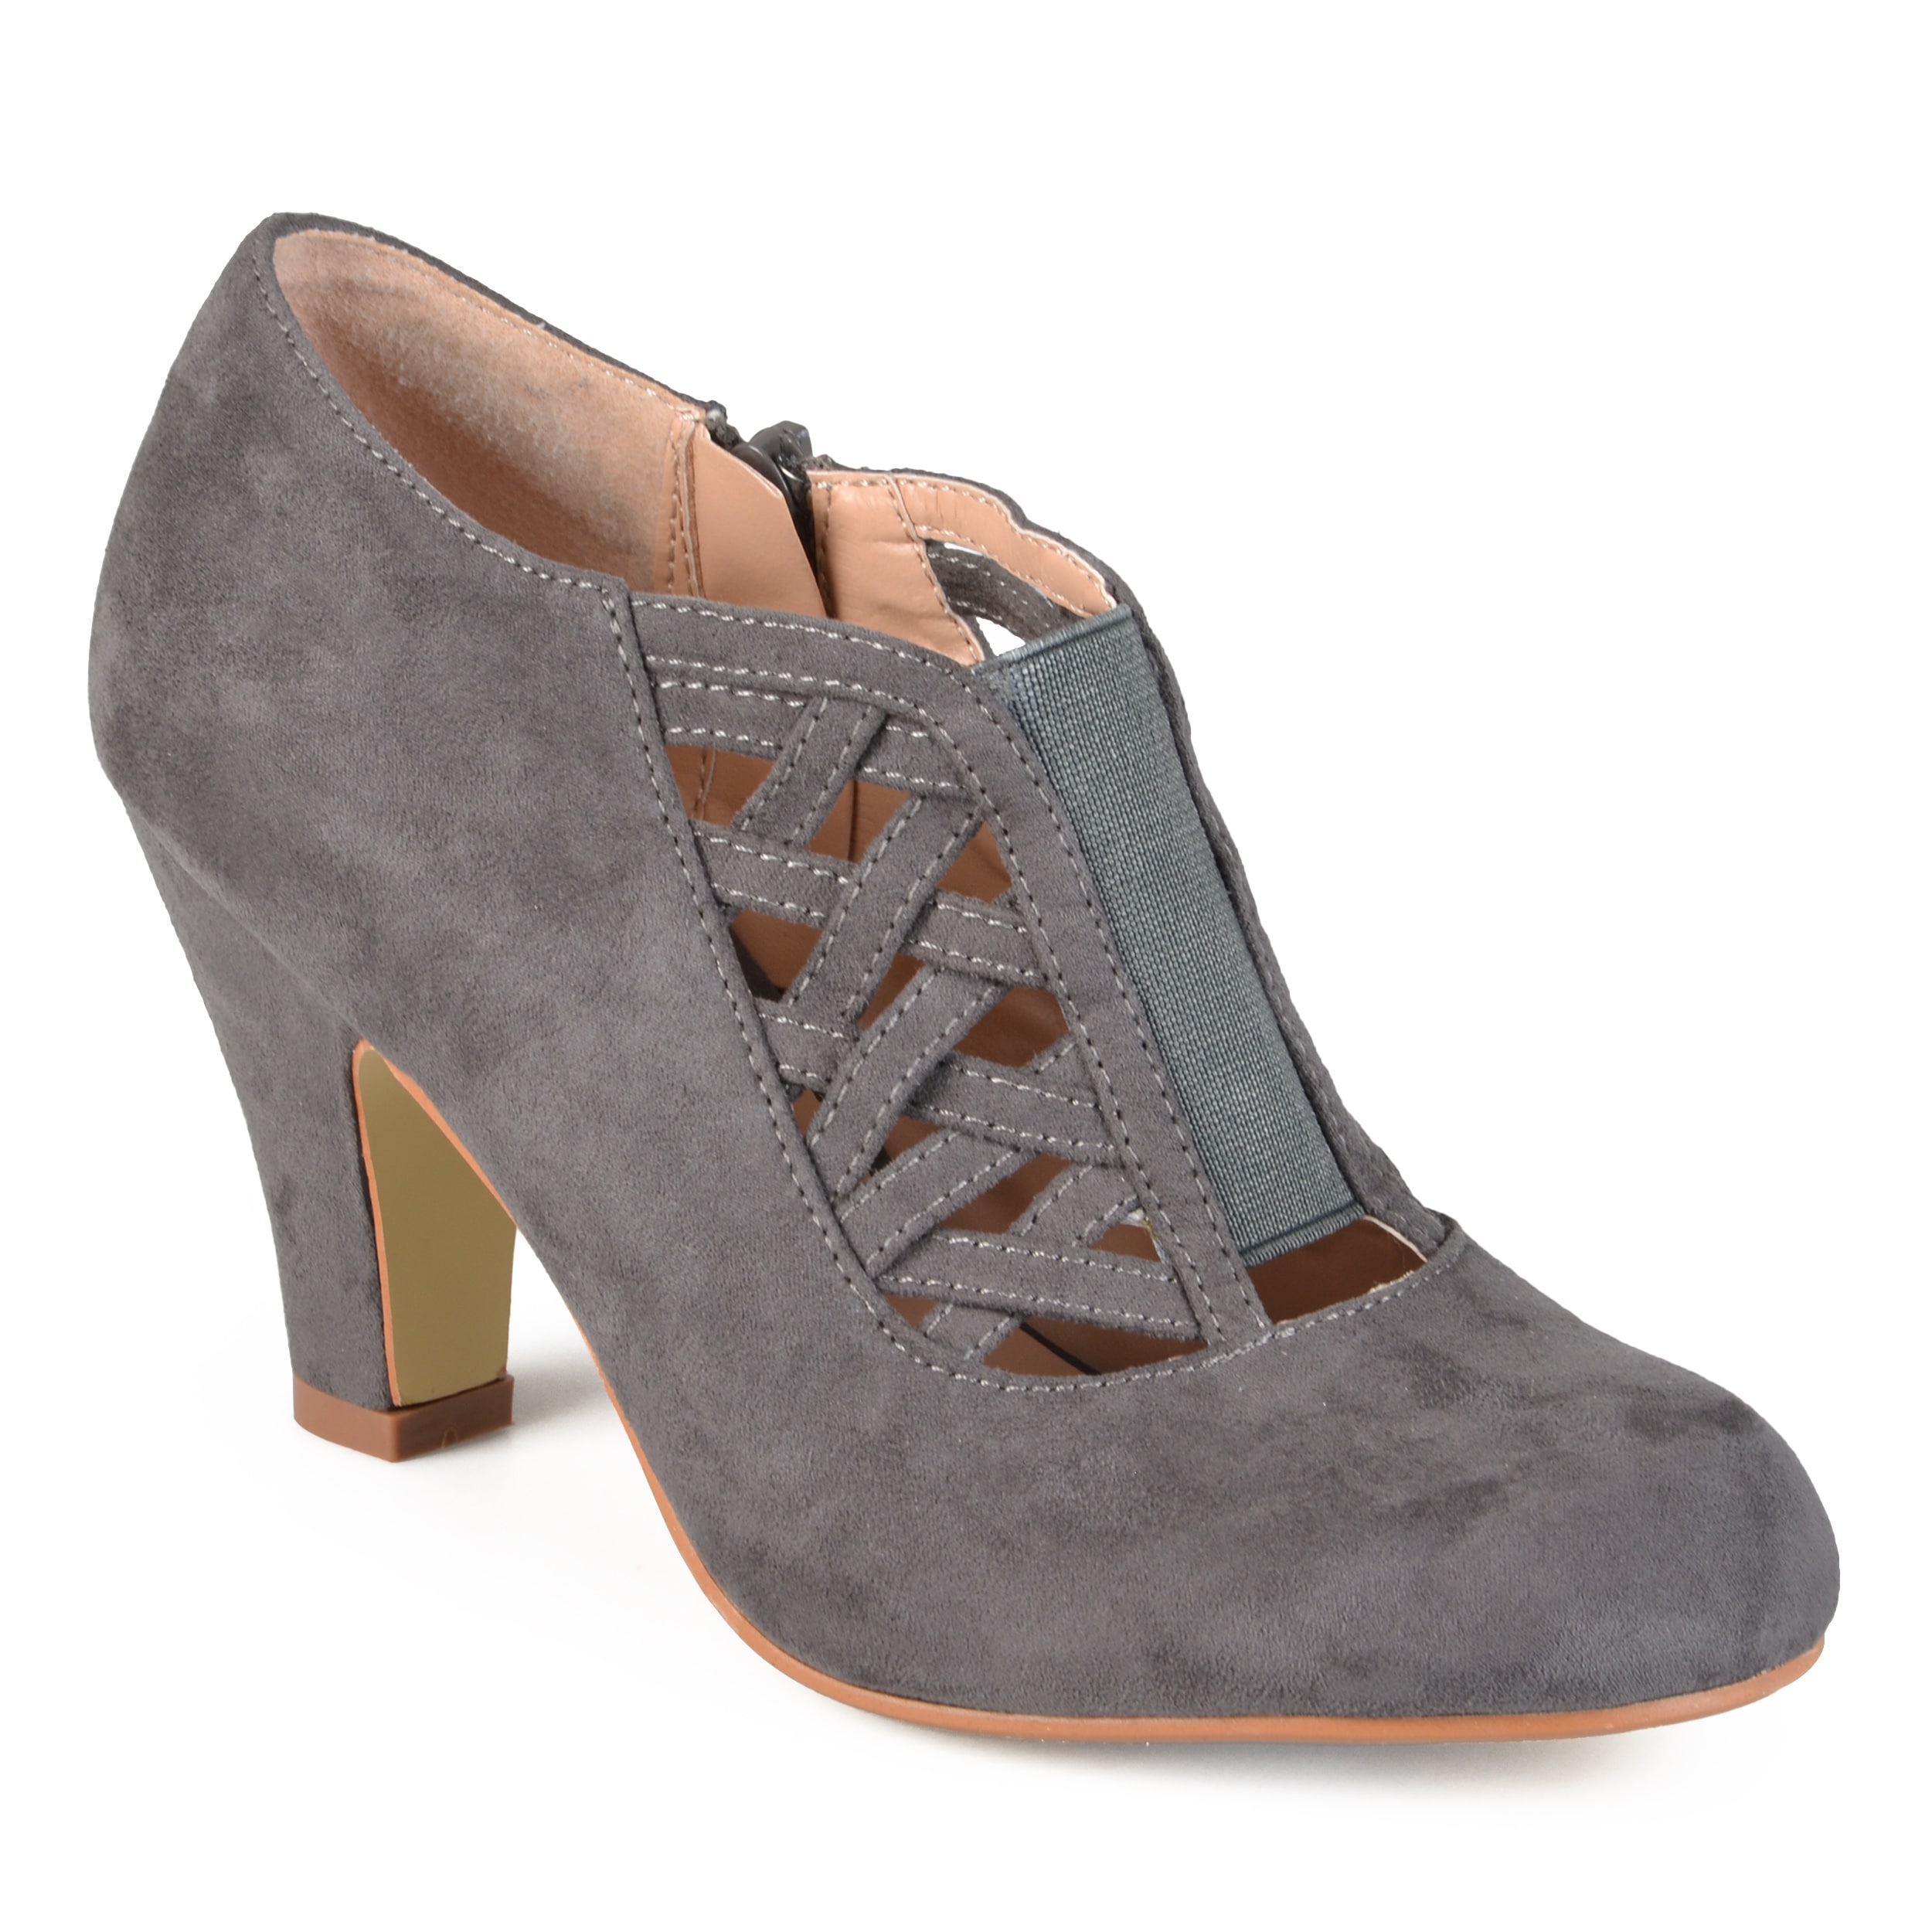 grey high heel booties